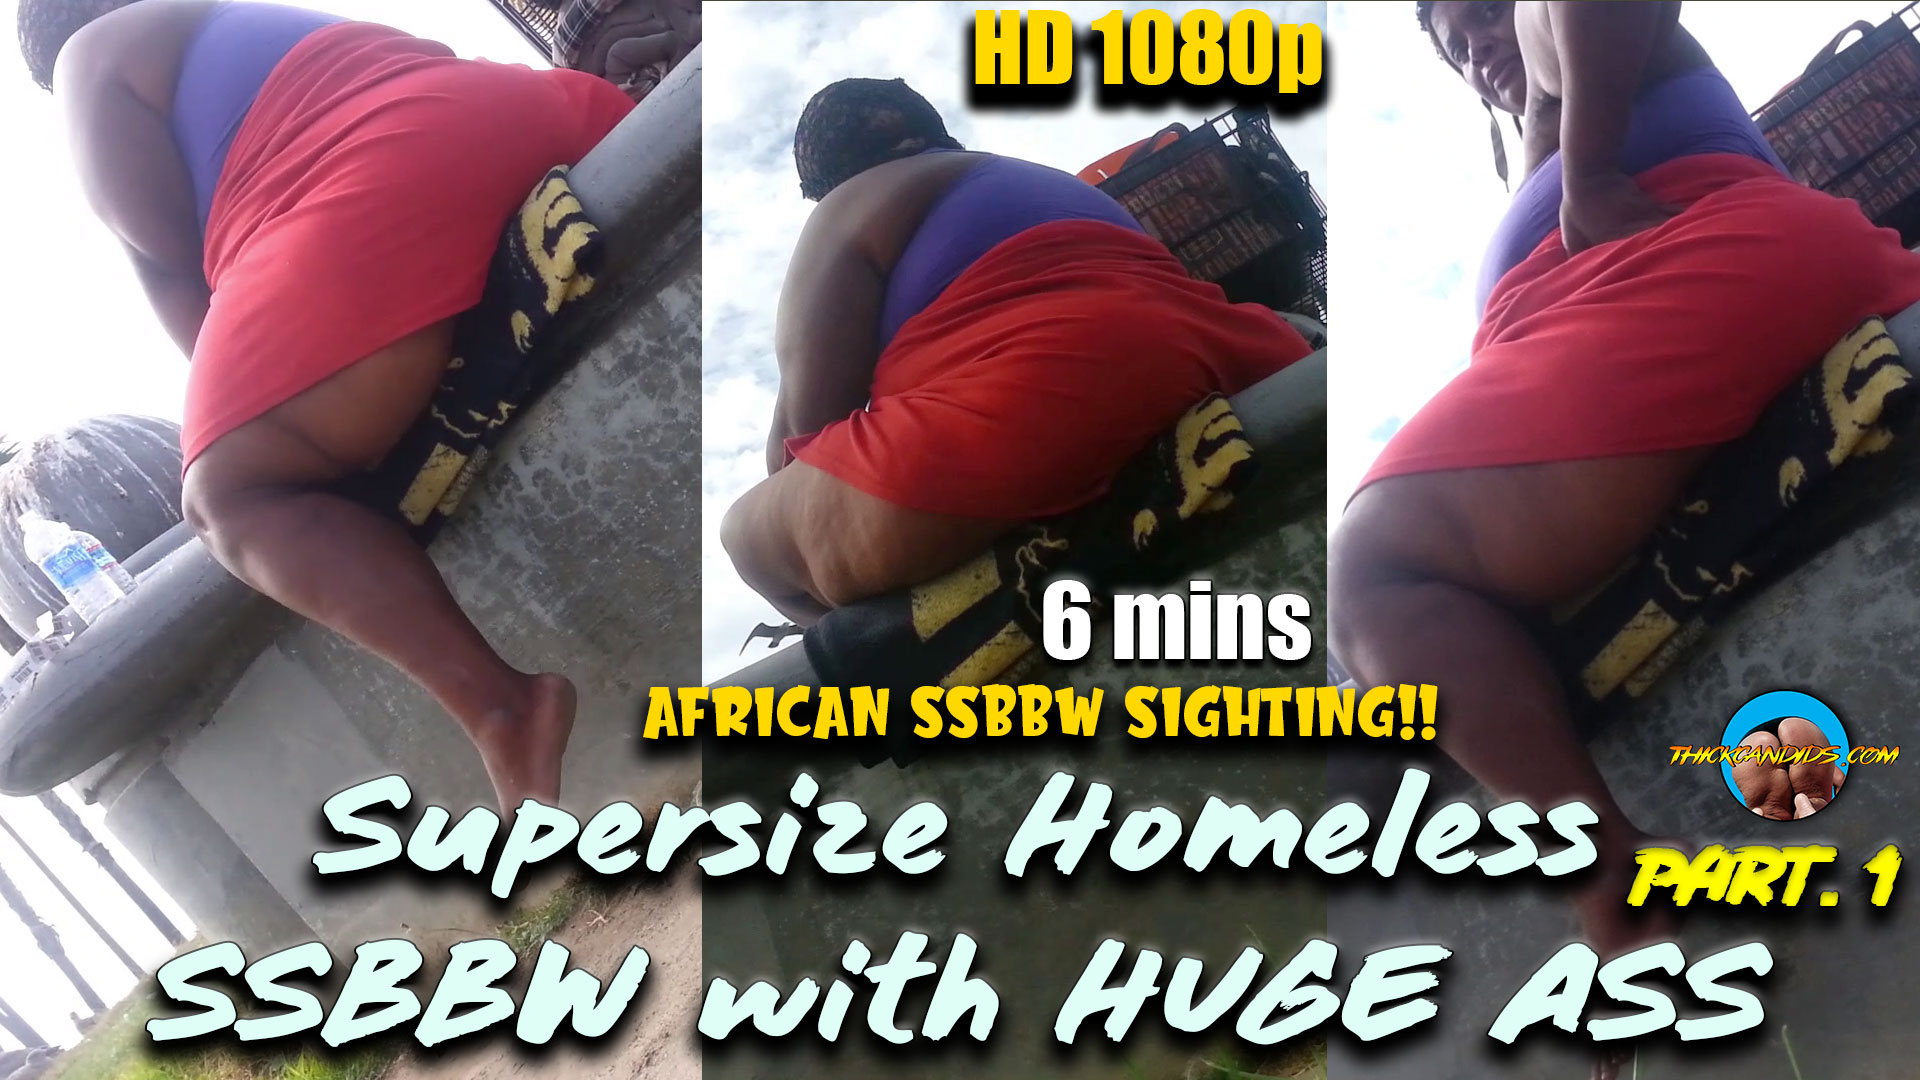 Supersize Homeless SSBBW with HUGE ASS part. 1